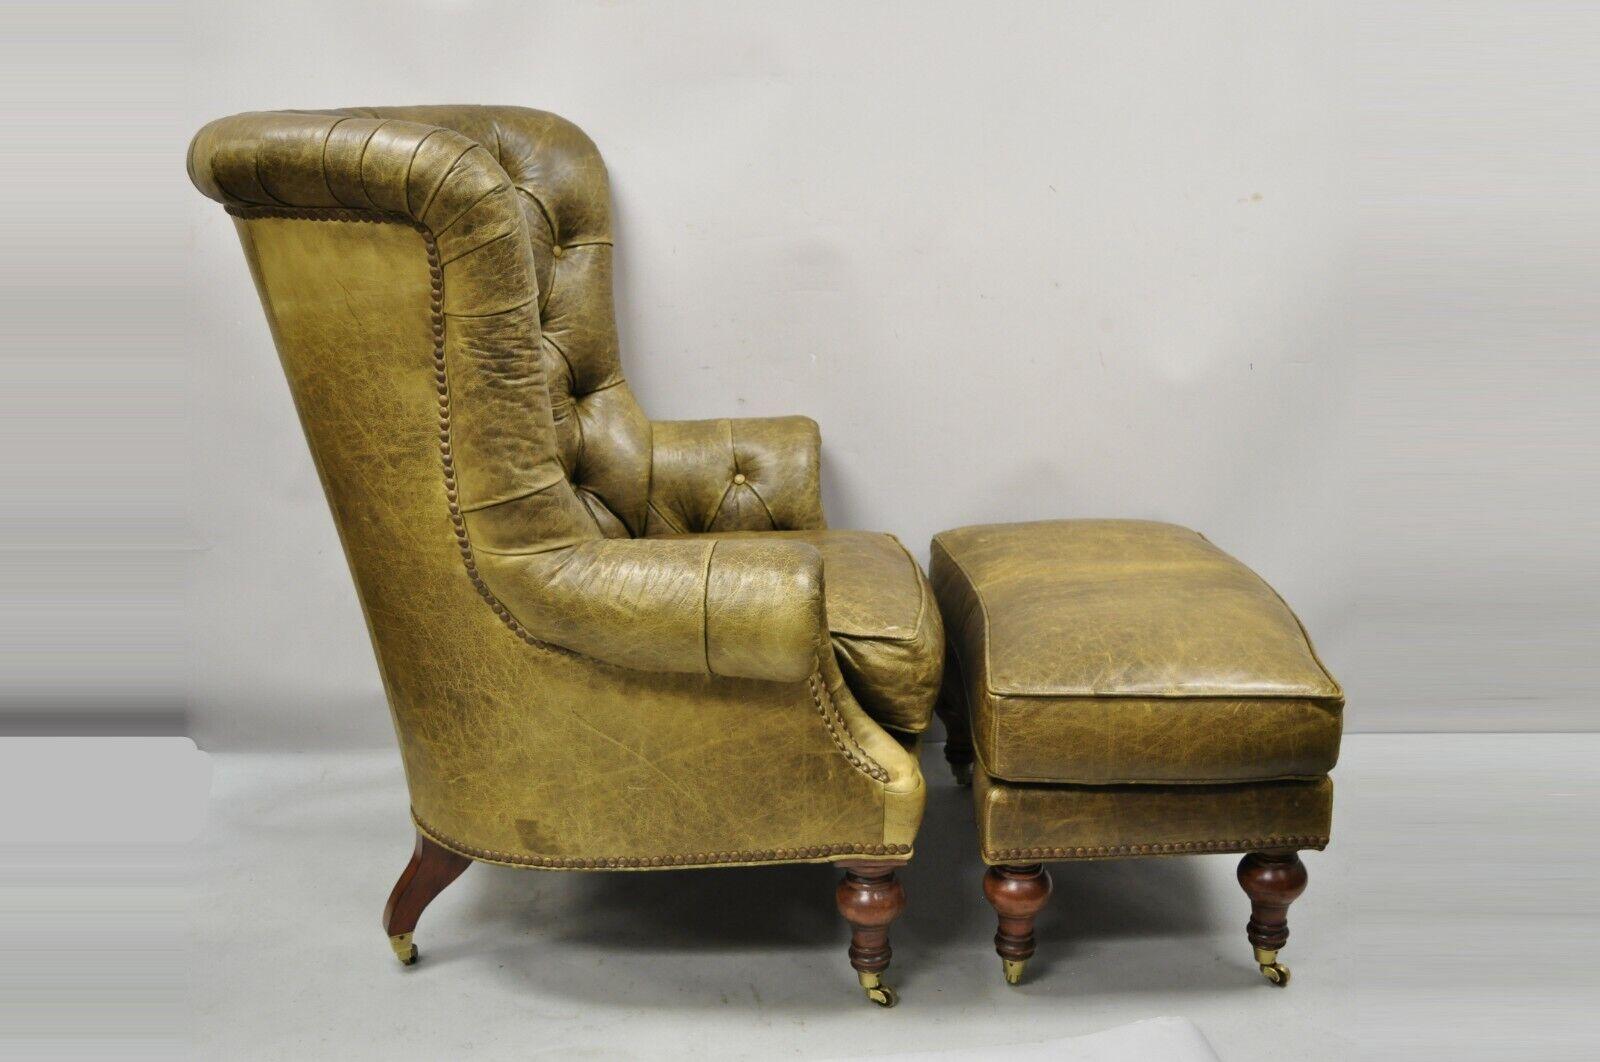 Lilian August, grand fauteuil club Chesterfield en cuir marron et vert, avec ottoman. Cet article comprend une grande chaise surdimensionnée, un ottoman assorti, des roulettes en laiton, un revêtement en cuir brun/vert 